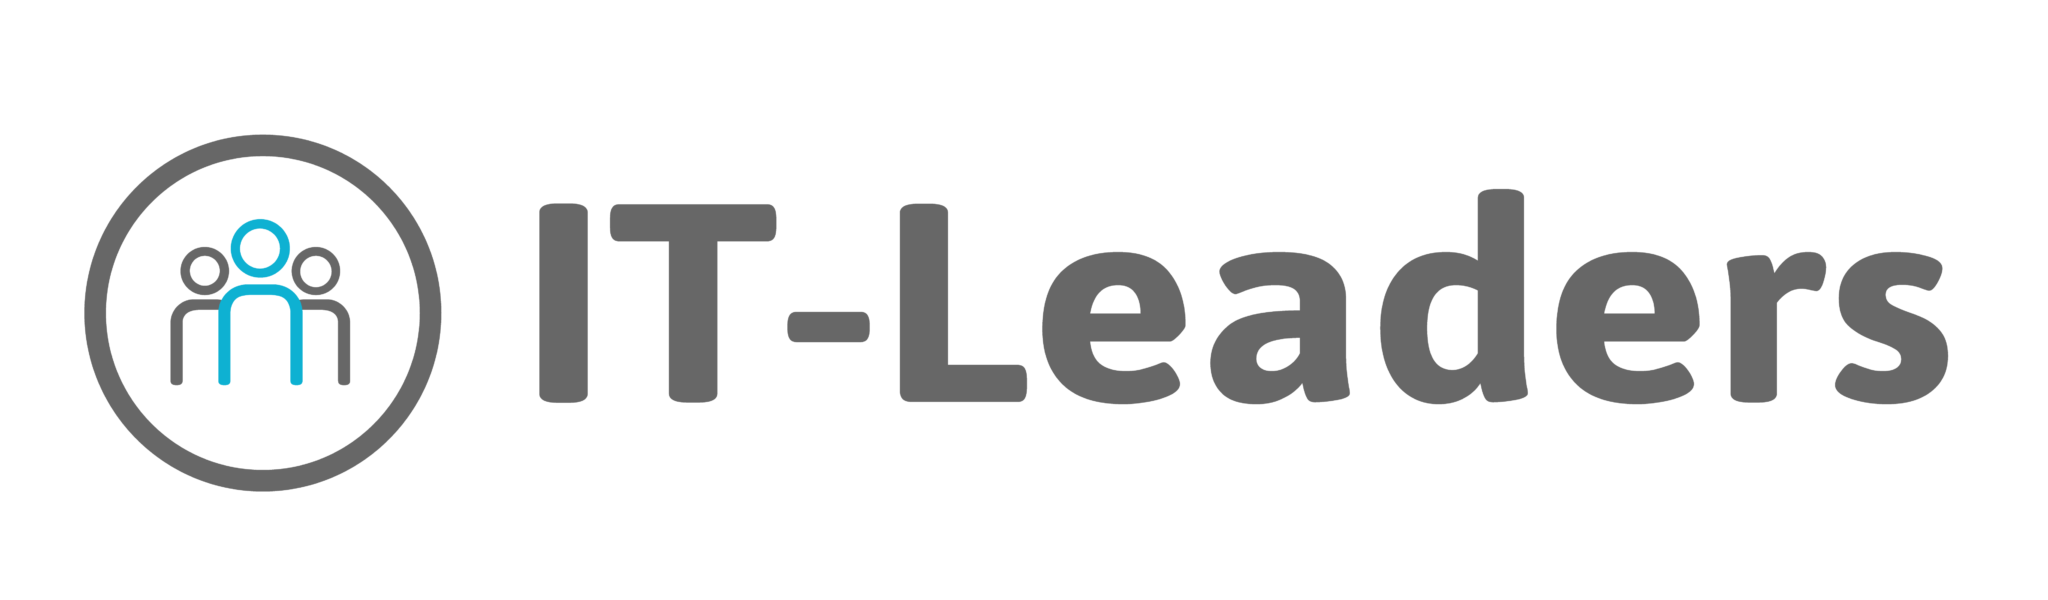 logo IT-Leders